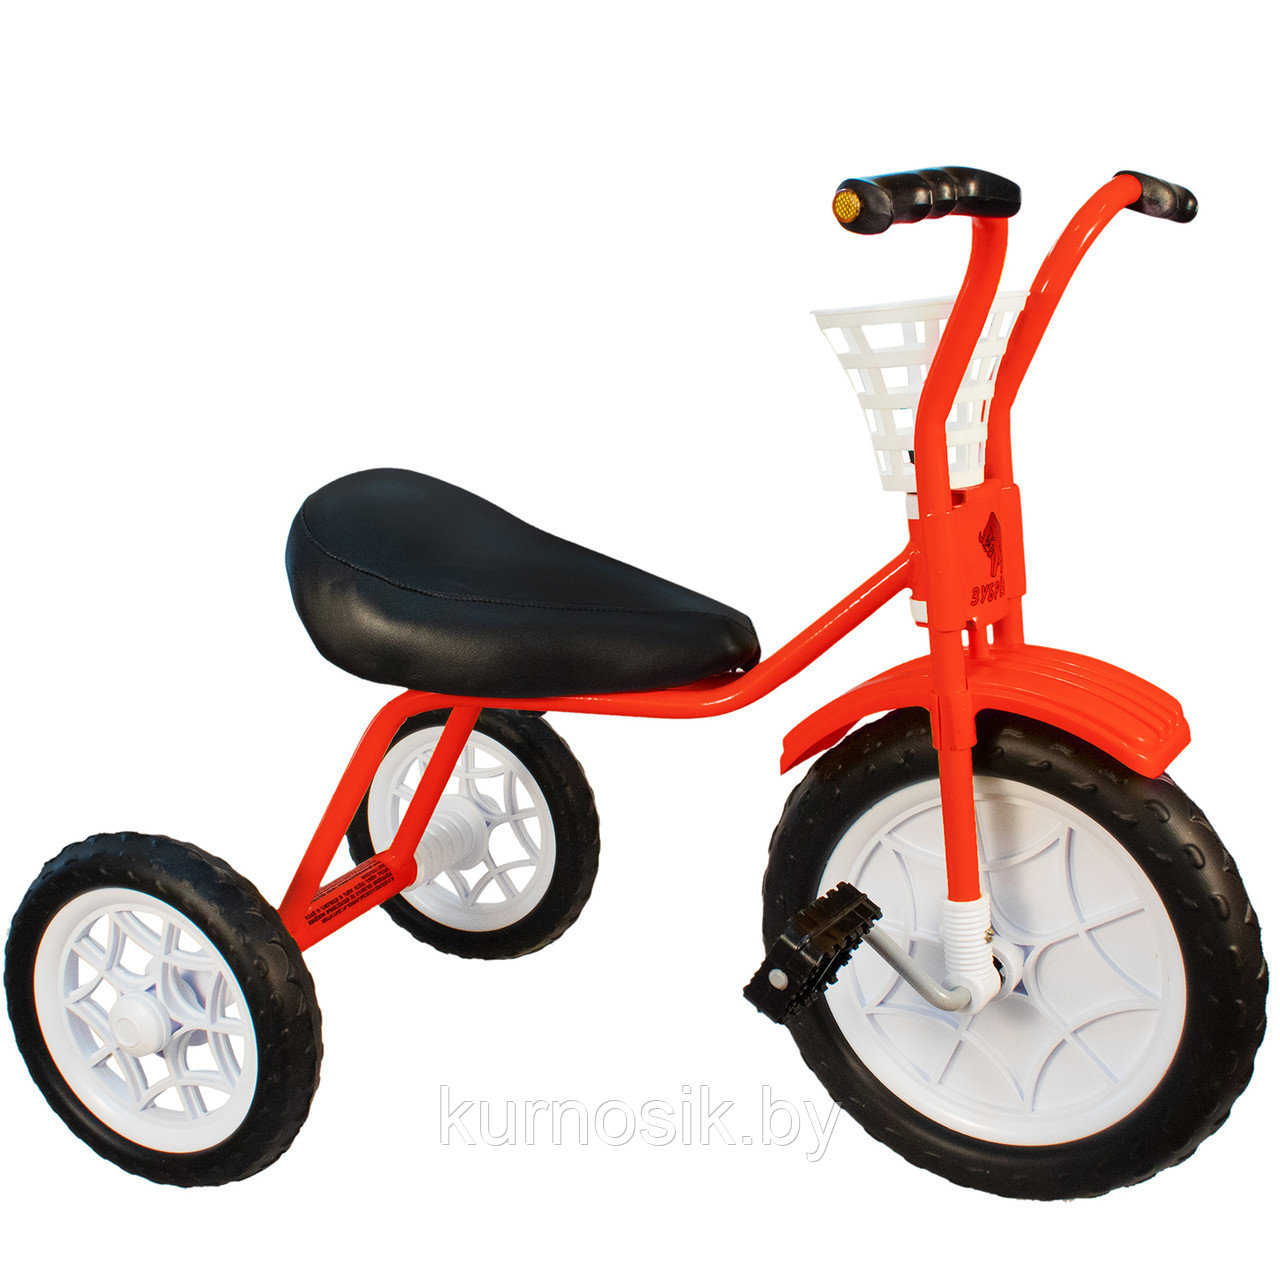 Трехколесный велосипед детский "Зубренок" (арт.526-611) красный